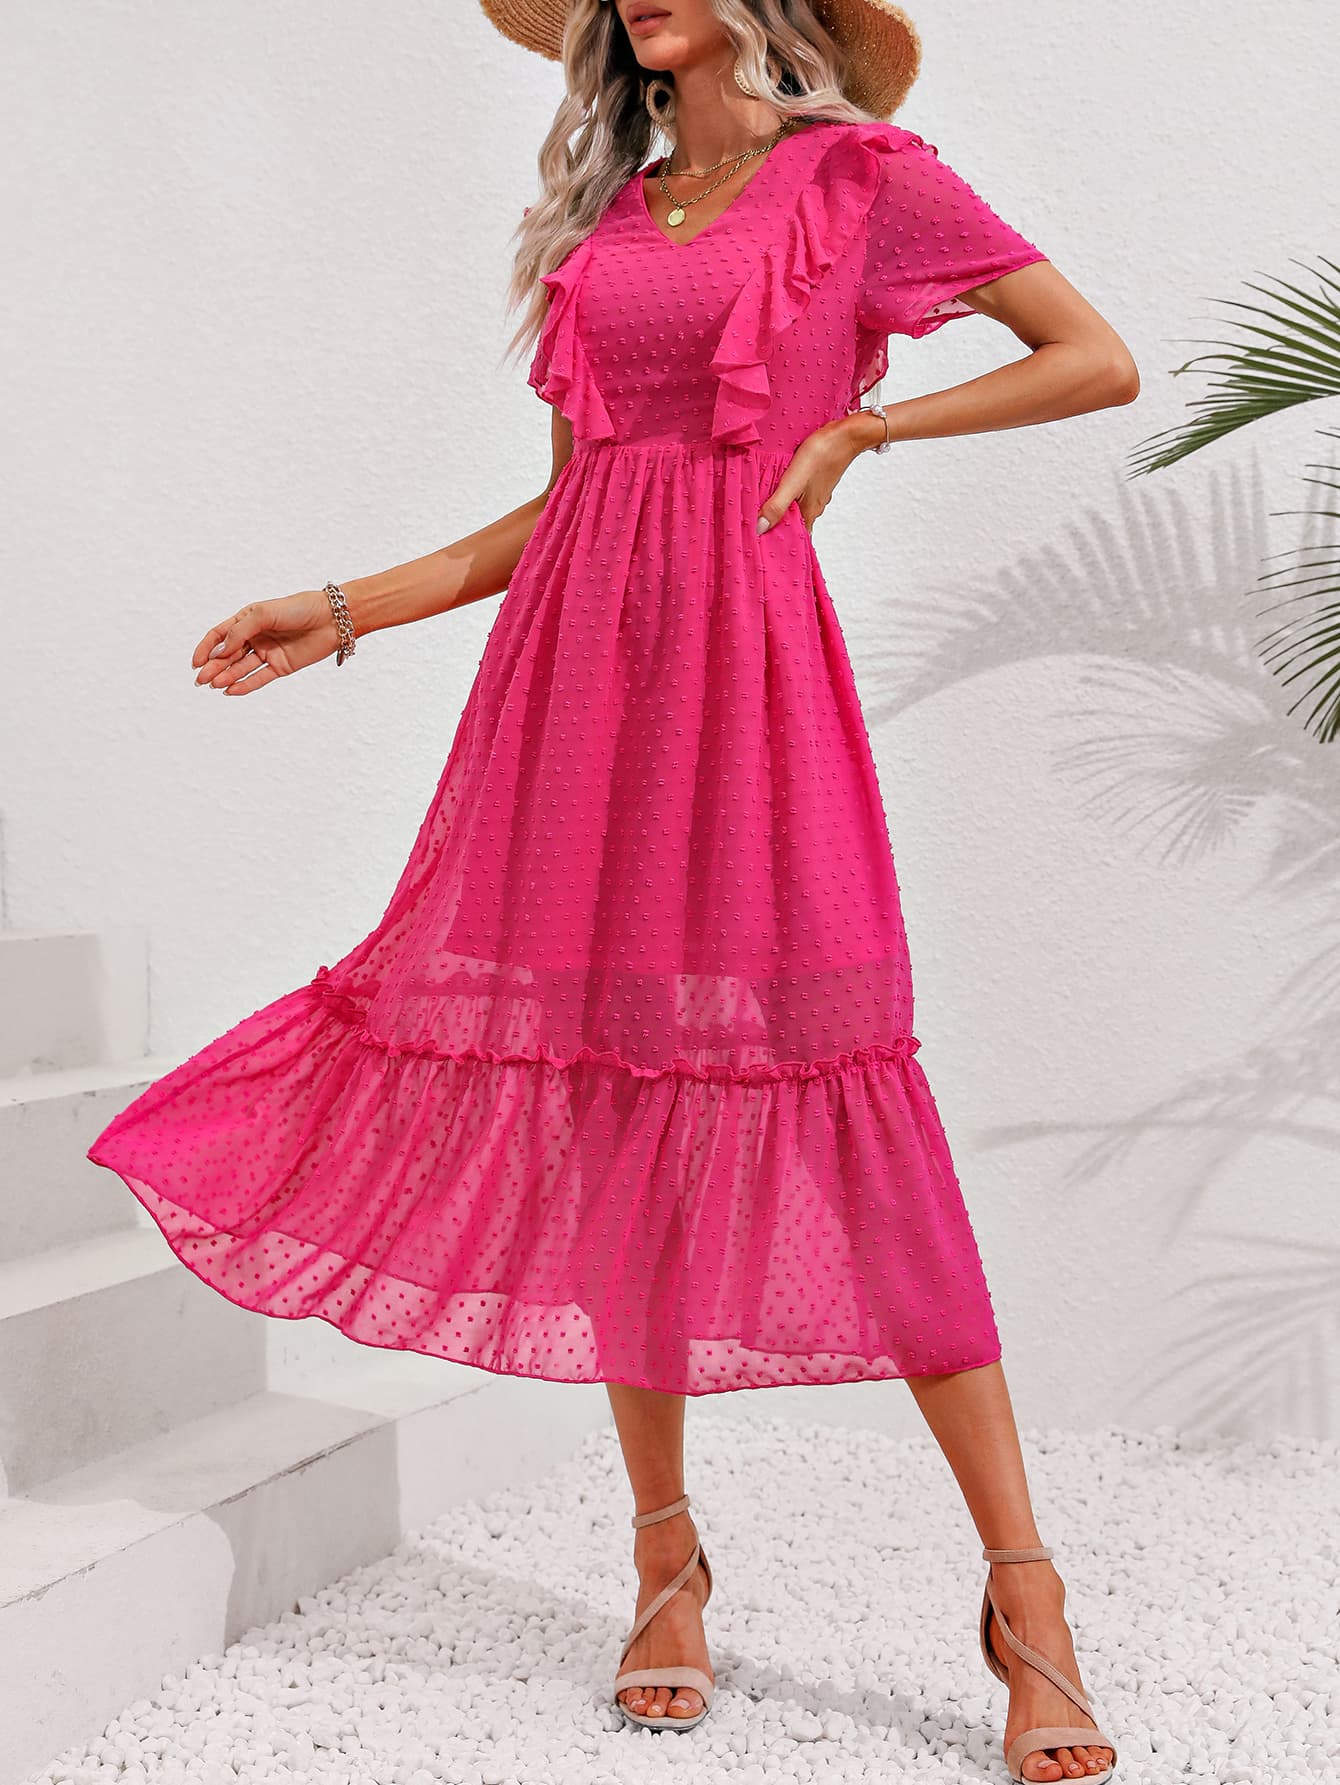 Hot Pink Swiss Dot Ruffled Short Sleeve Dress